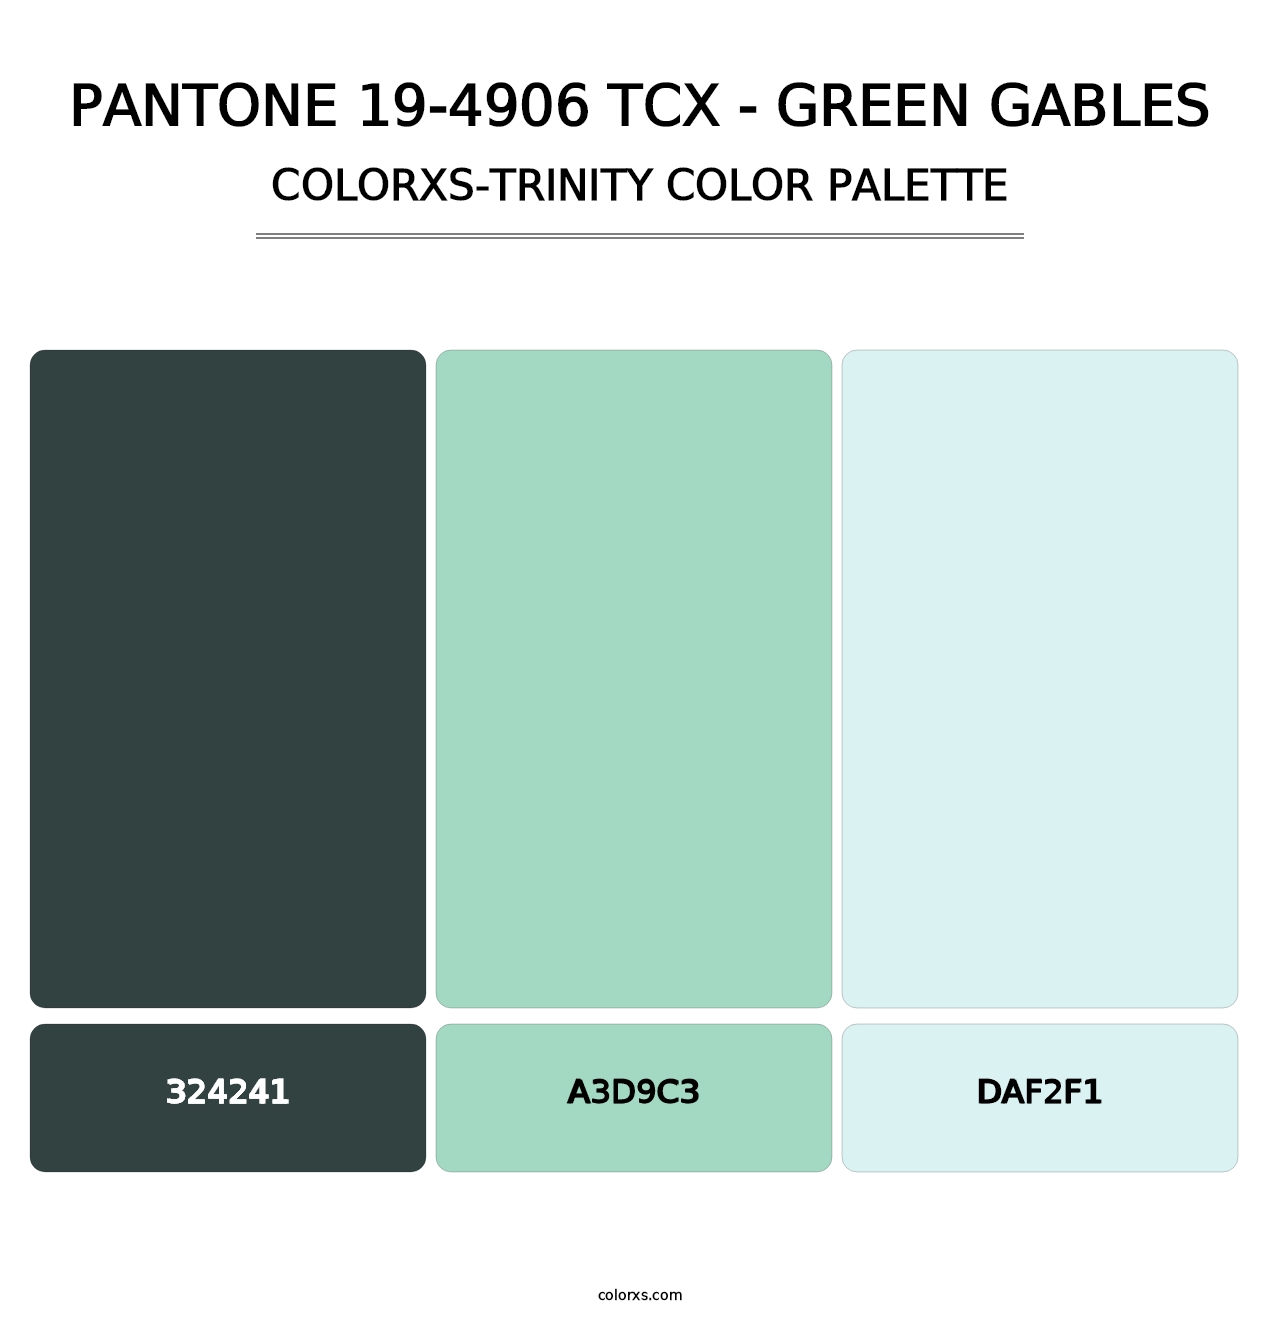 PANTONE 19-4906 TCX - Green Gables - Colorxs Trinity Palette